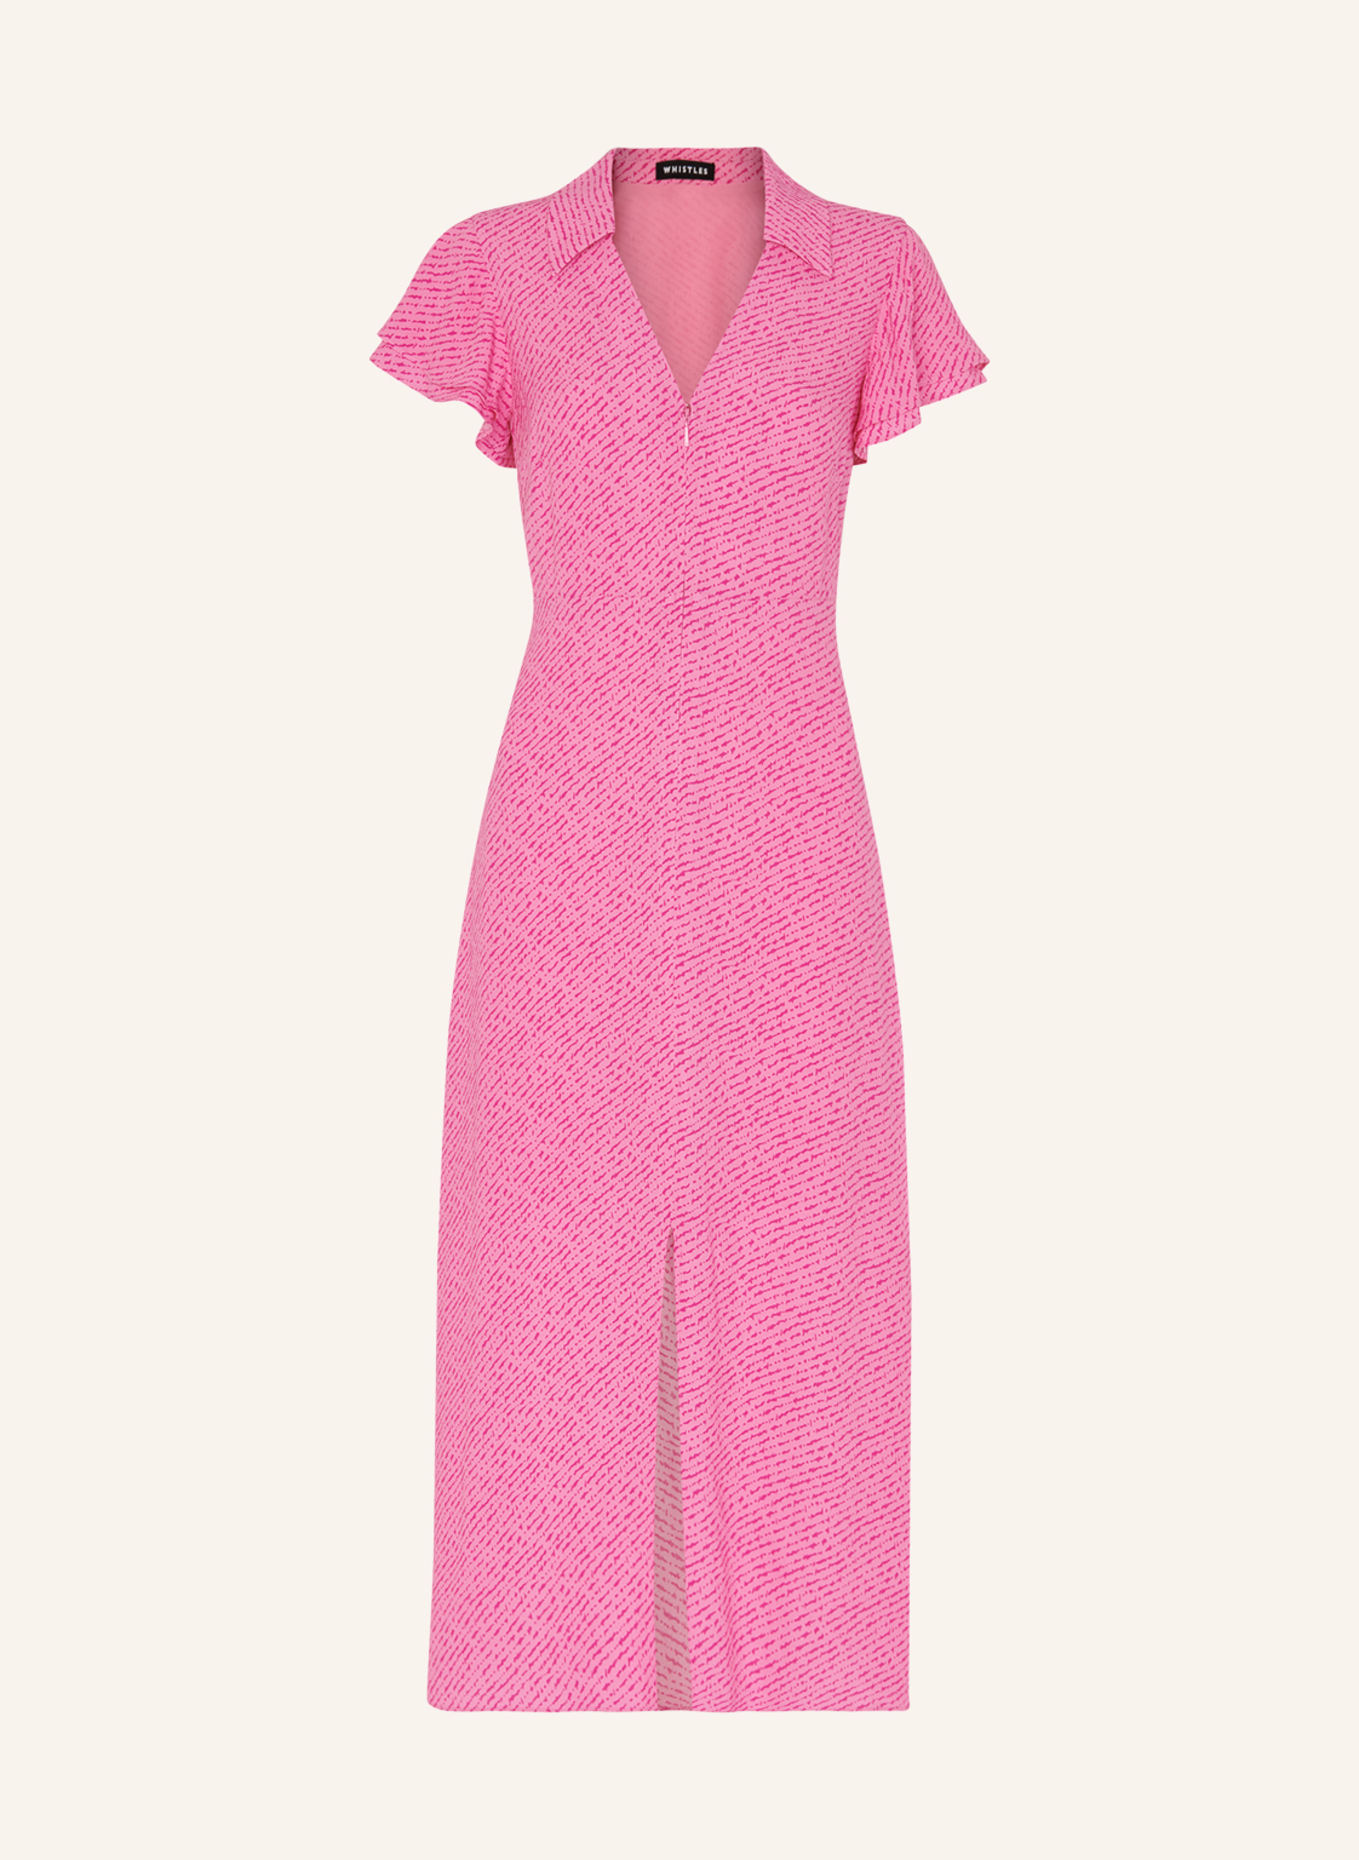 WHISTLES Kleid, Farbe: ROSA/ PINK (Bild 1)